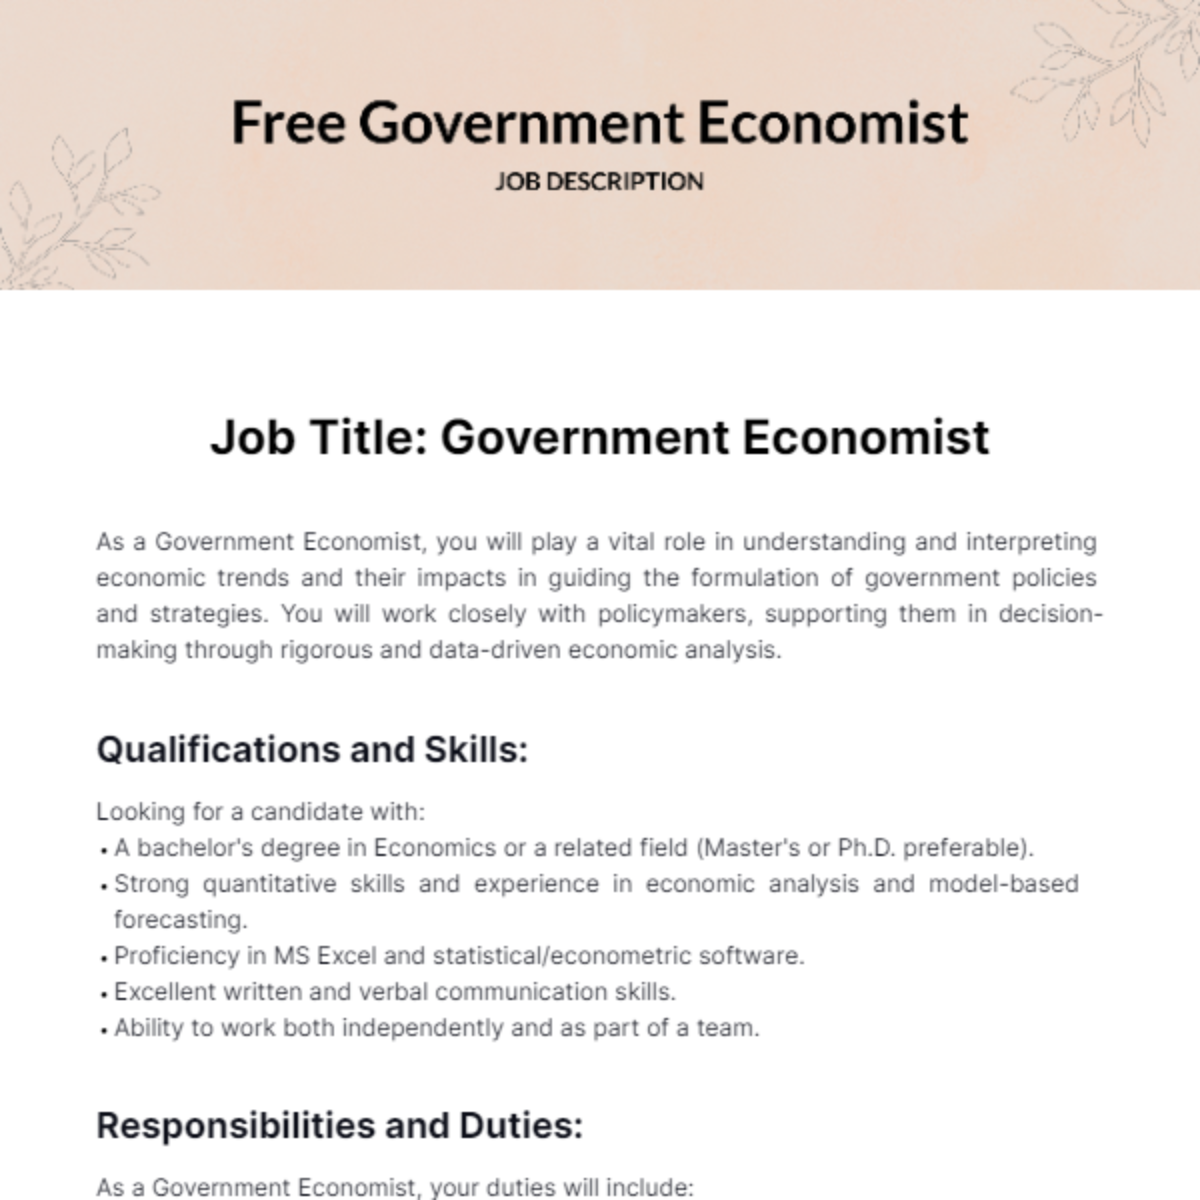 Free Government Economist Job Description Template